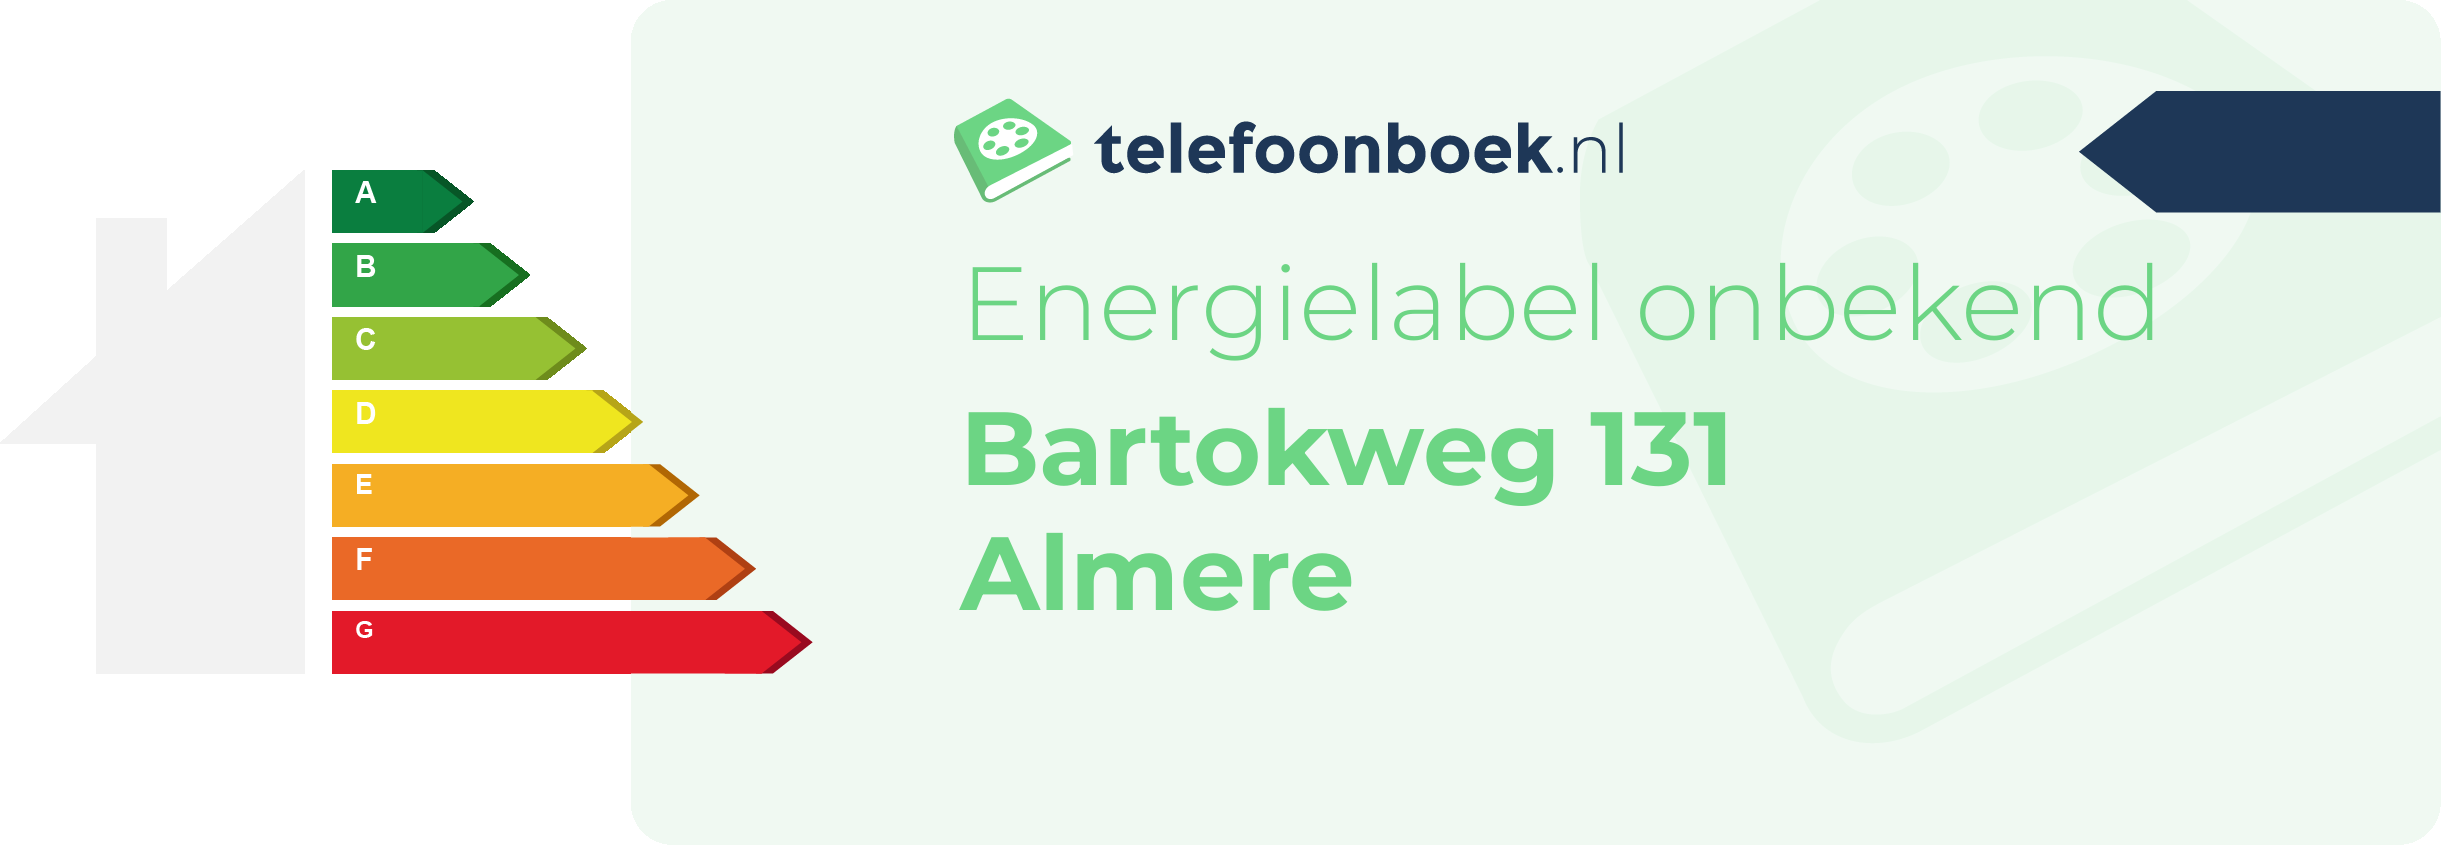 Energielabel Bartokweg 131 Almere